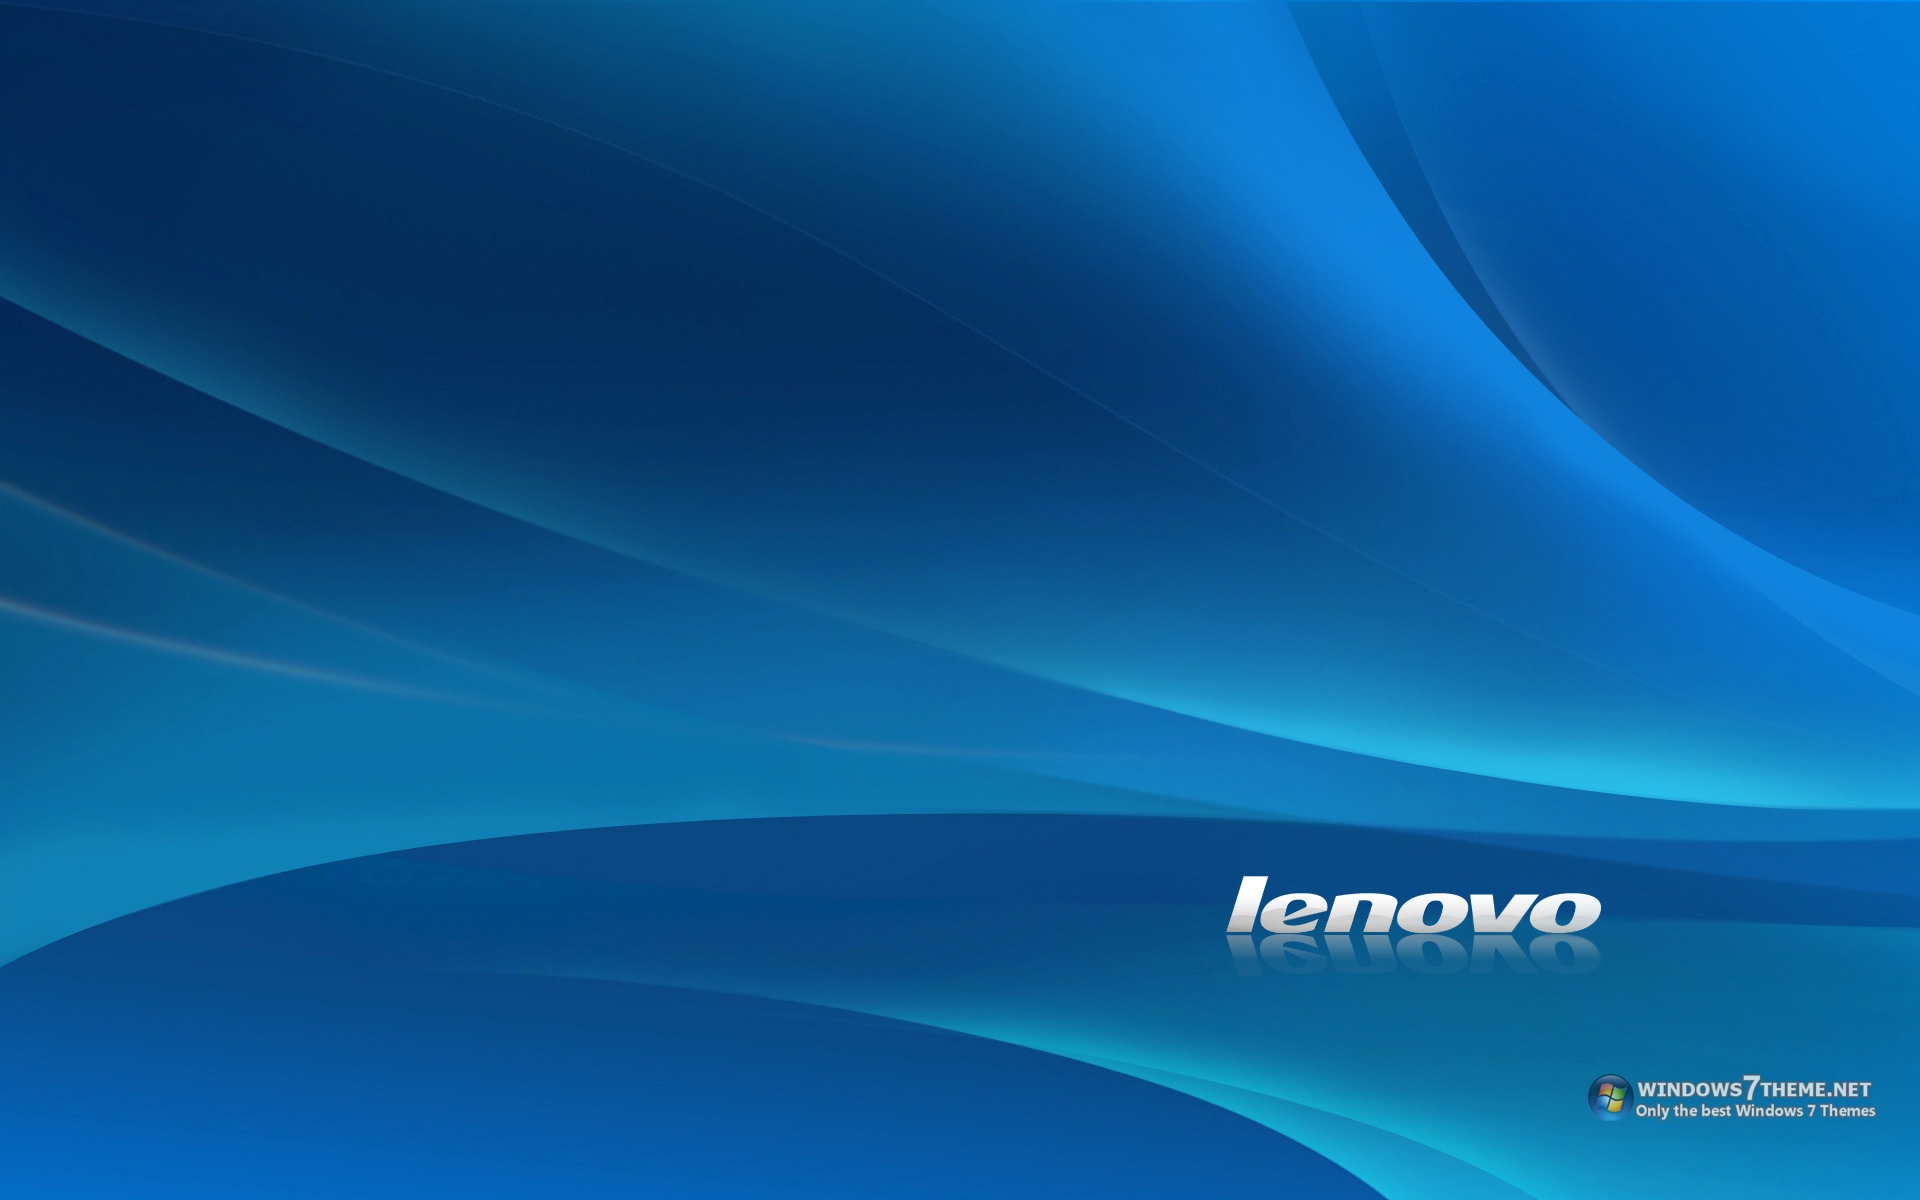 Lenovo Wallpaper Windows 7 - Với Lenovo Wallpaper Windows 7, bạn sẽ được tận hưởng những hình nền chất lượng cao và độ phân giải tuyệt vời nhất. Khám phá ngay chùm ảnh Lenovo Wallpaper Windows 7 để thấy sự tinh tế và đẳng cấp của sản phẩm Lenovo.